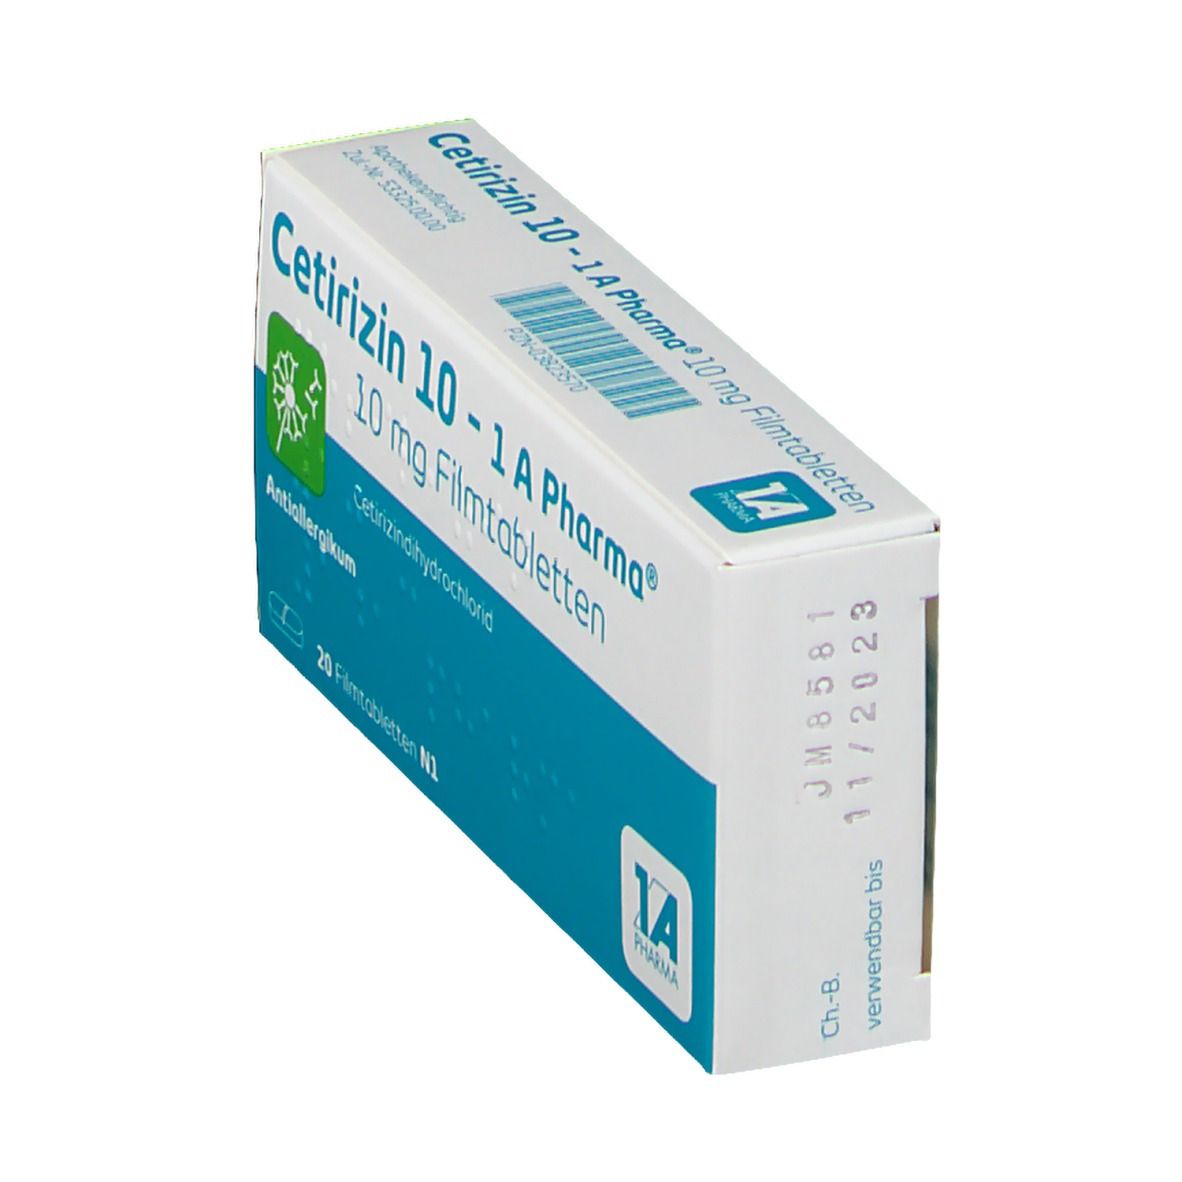 Cetirizin 10 - 1 A Pharma®